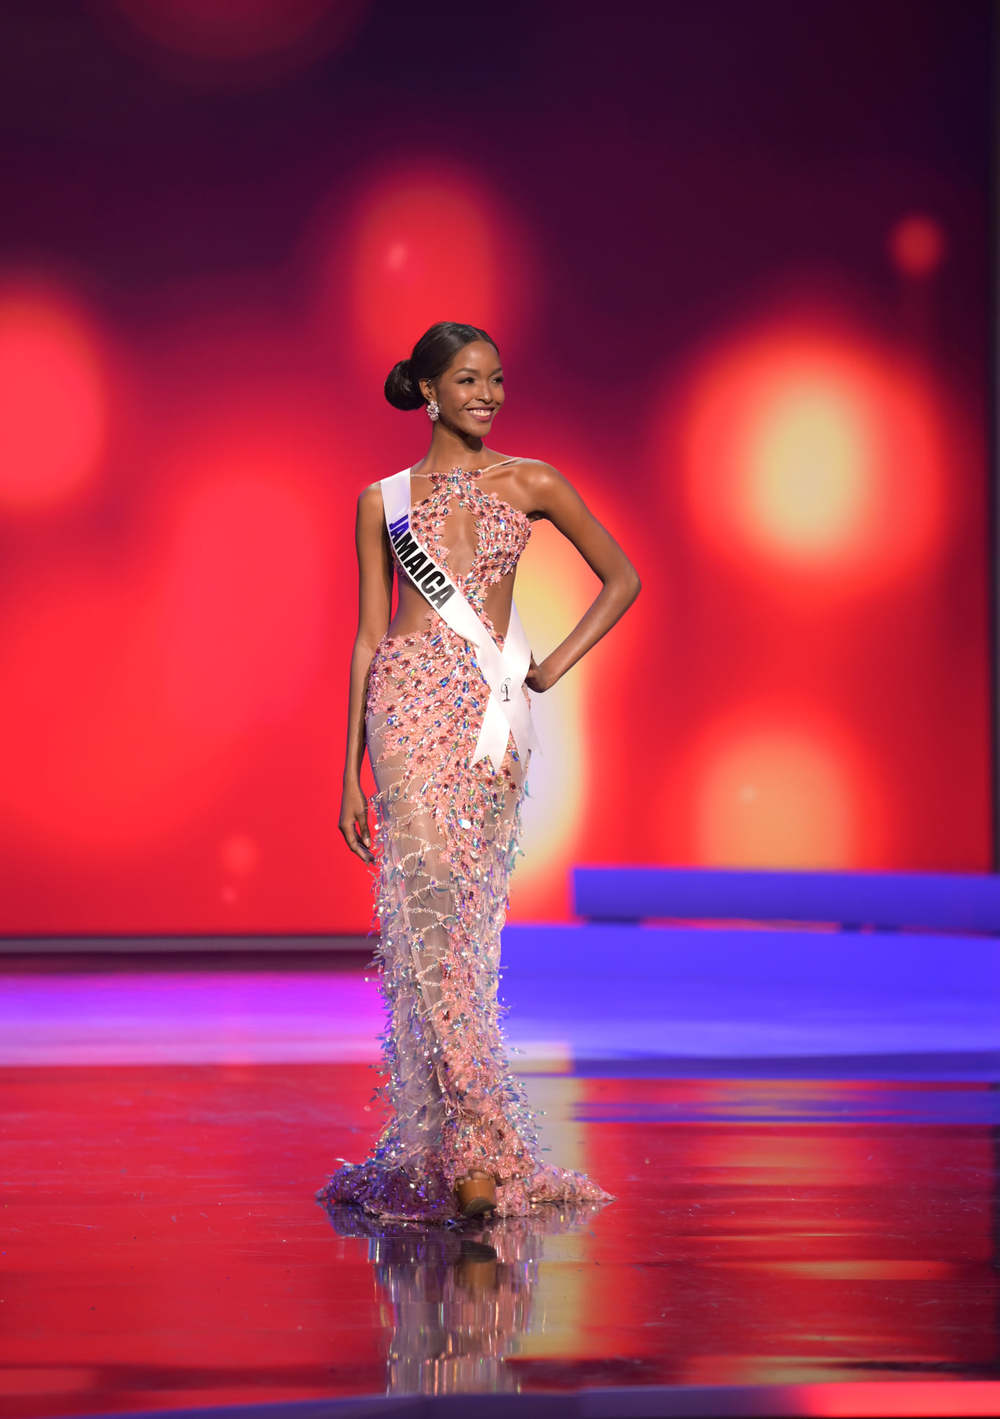  
Miqueal-Symone Williams, Hoa hậu Hoàn vũ Jamaica đã tạo nhiều ấn tượng tốt với khán giả. (Ảnh BTC) - Tin sao Viet - Tin tuc sao Viet - Scandal sao Viet - Tin tuc cua Sao - Tin cua Sao